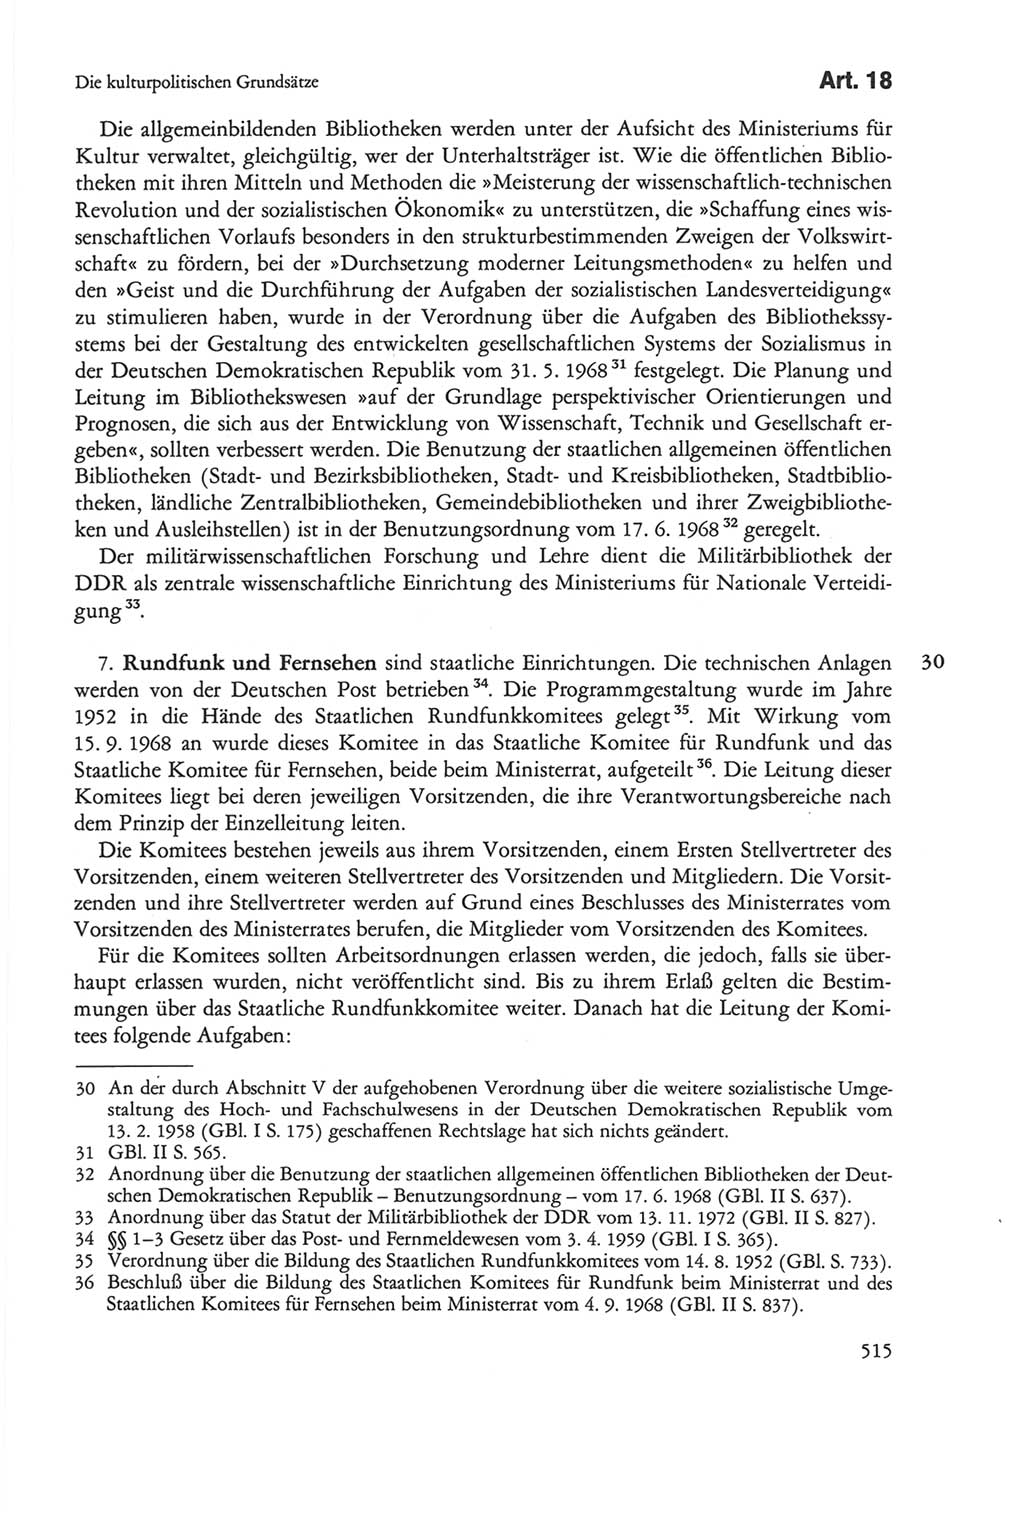 Die sozialistische Verfassung der Deutschen Demokratischen Republik (DDR), Kommentar mit einem Nachtrag 1997, Seite 515 (Soz. Verf. DDR Komm. Nachtr. 1997, S. 515)